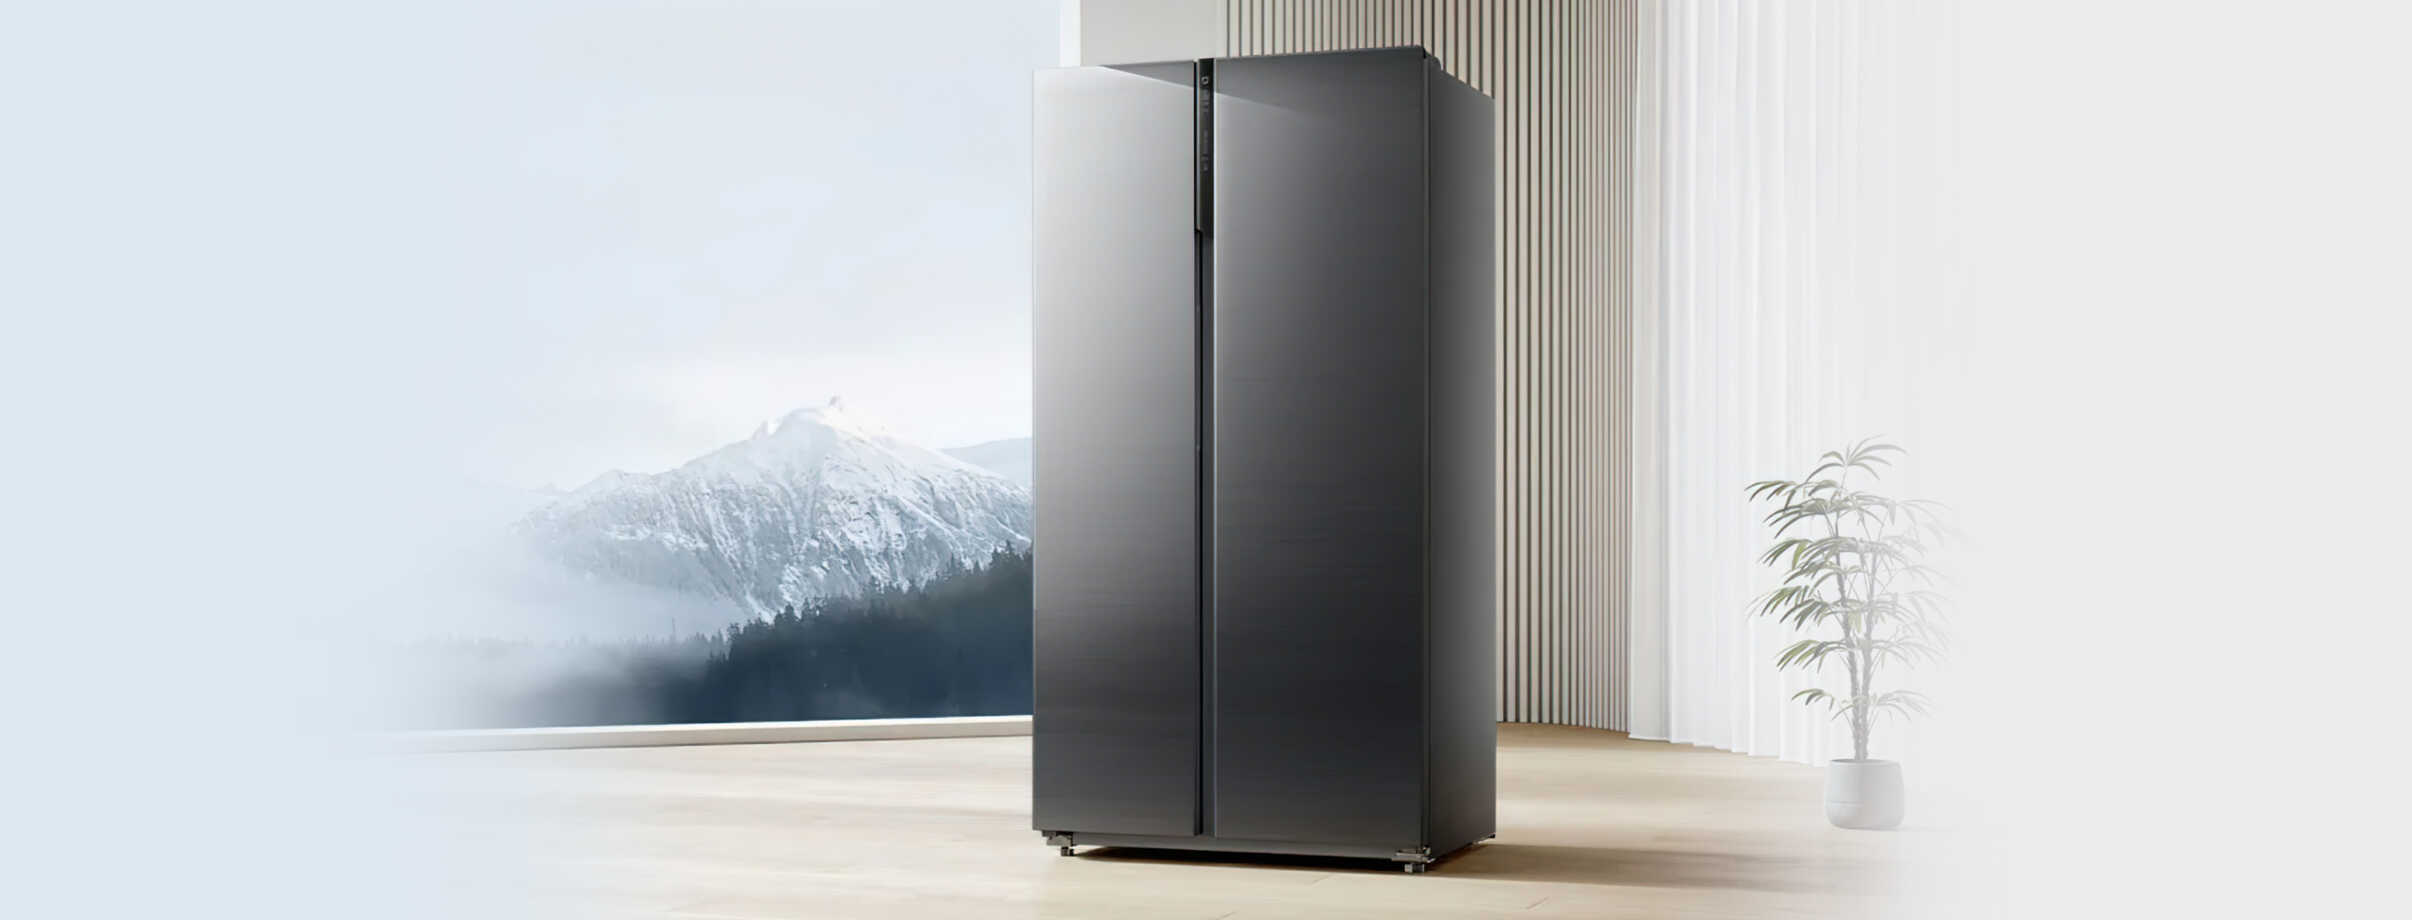 🧊 Идеальный холодильник теперь существует